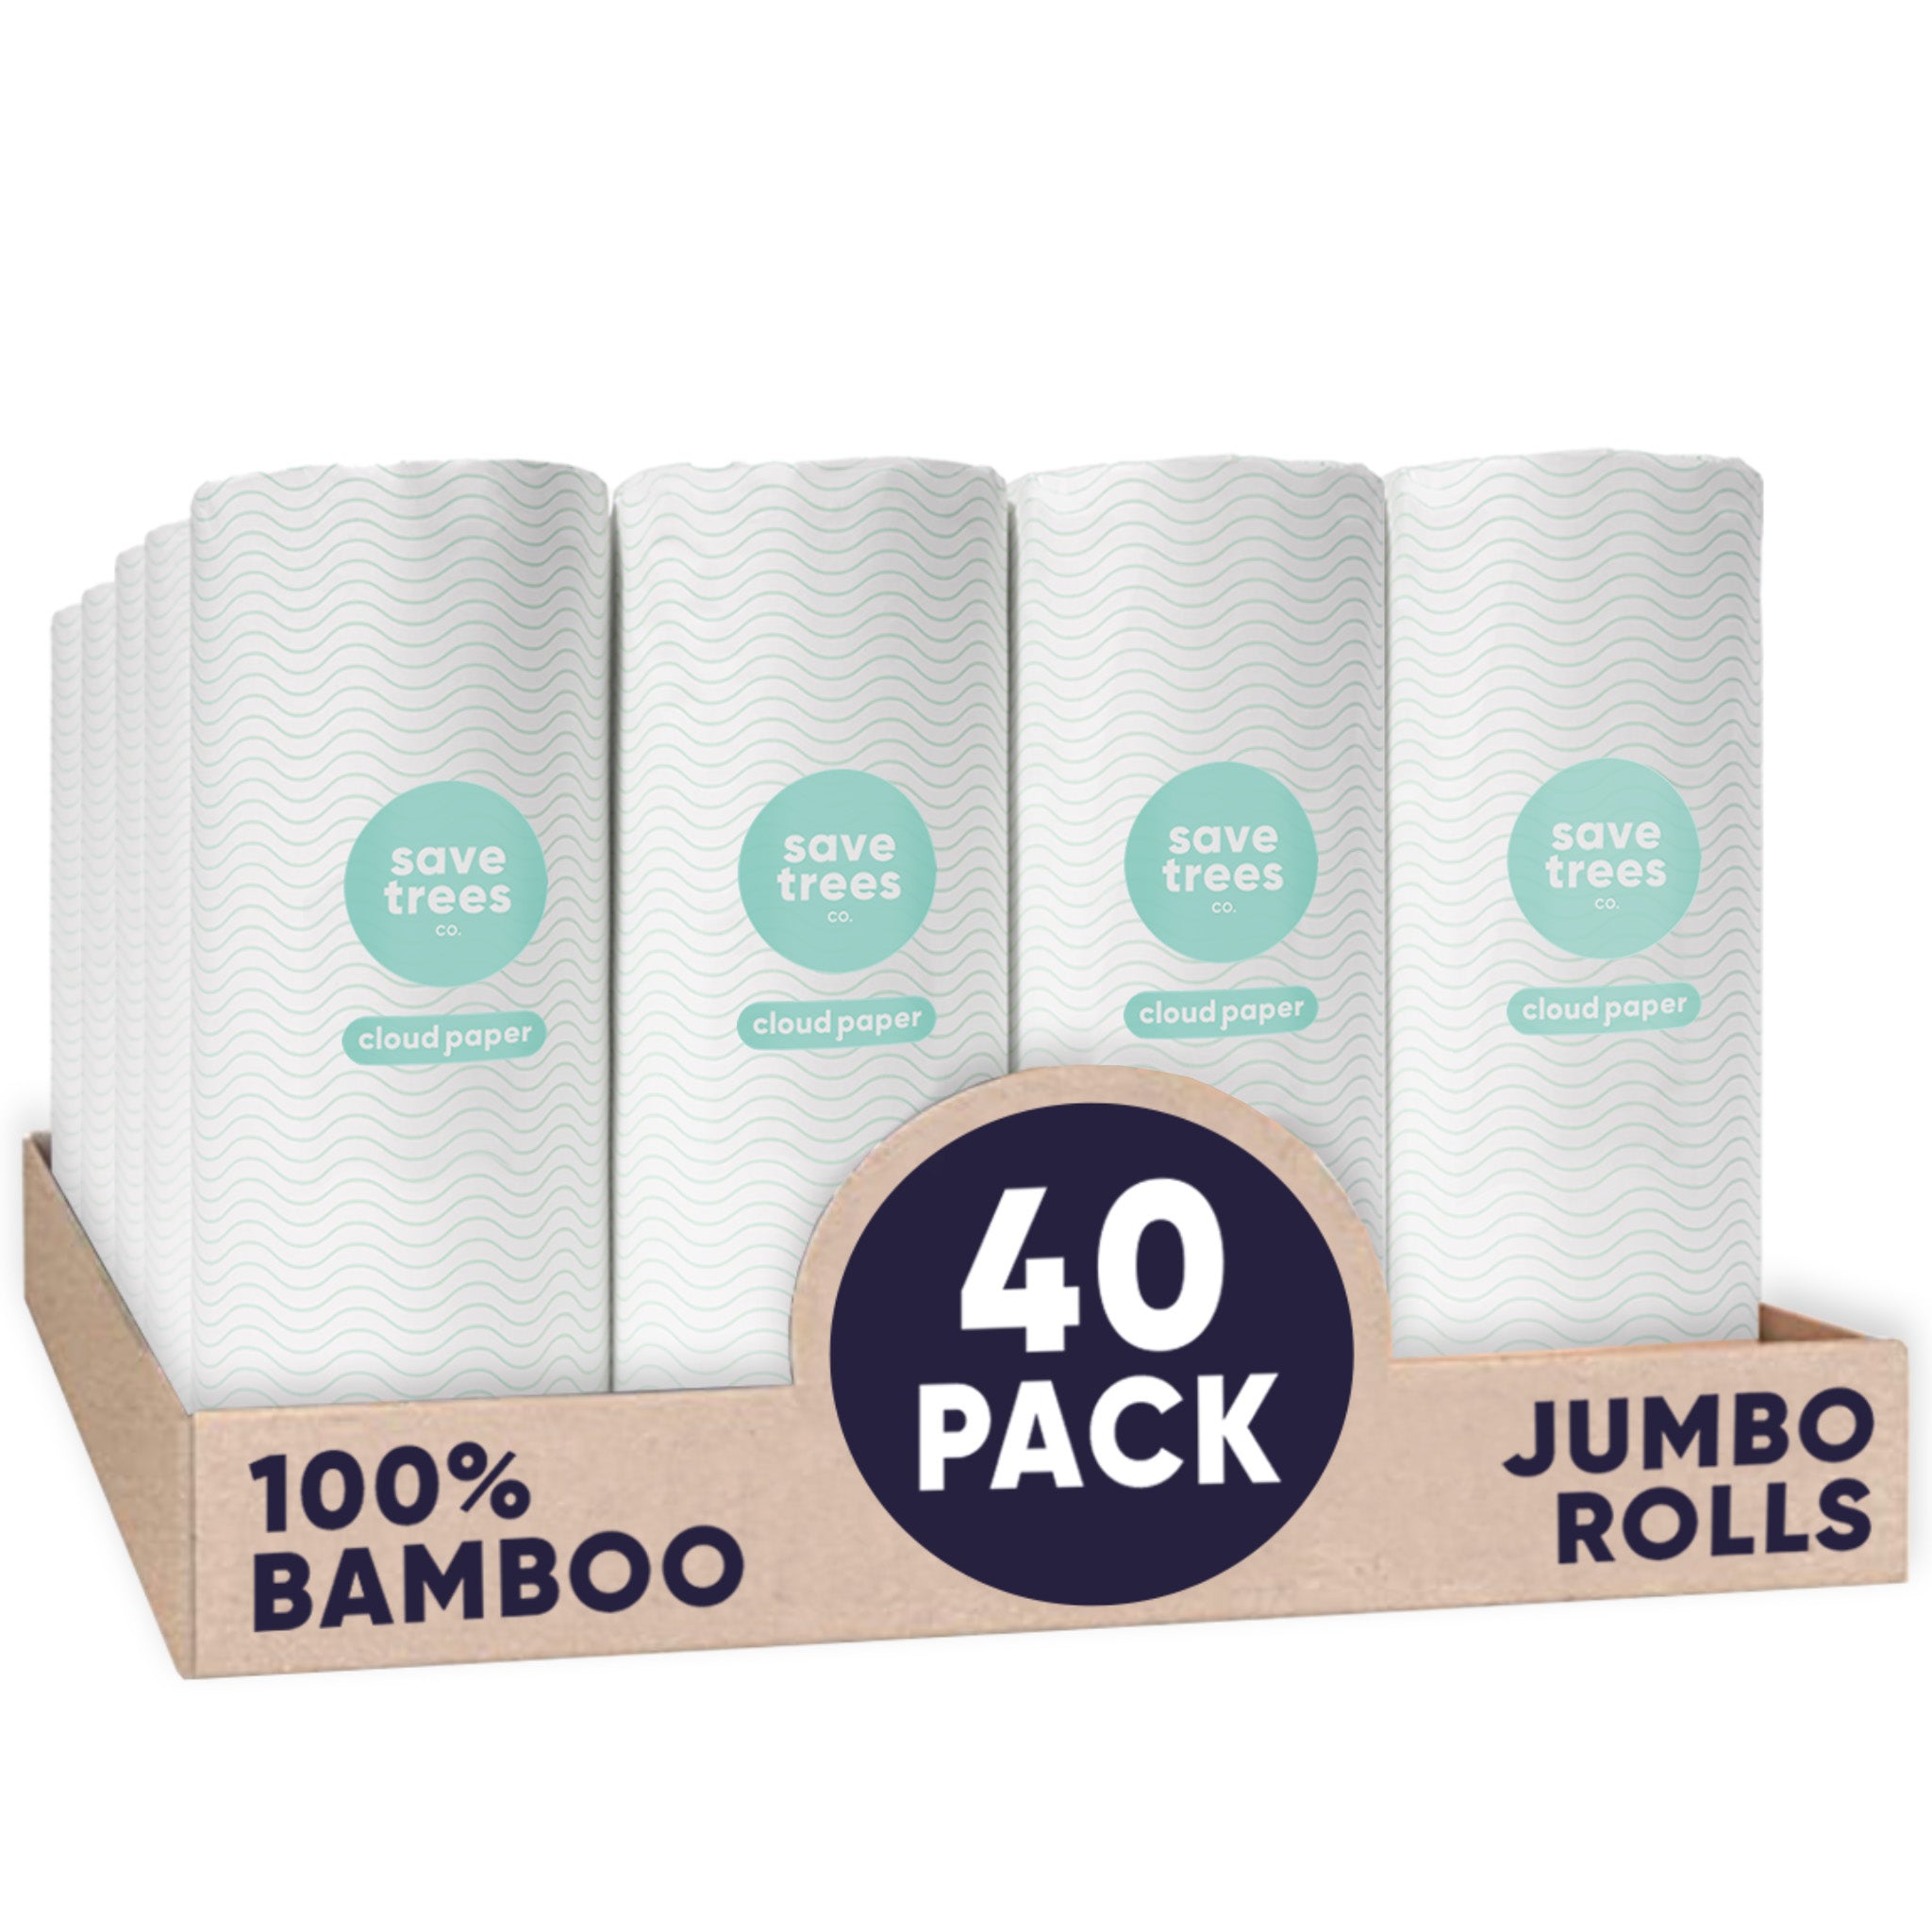 Buy Reusable Kitchen Paper Rolls & Towels Online